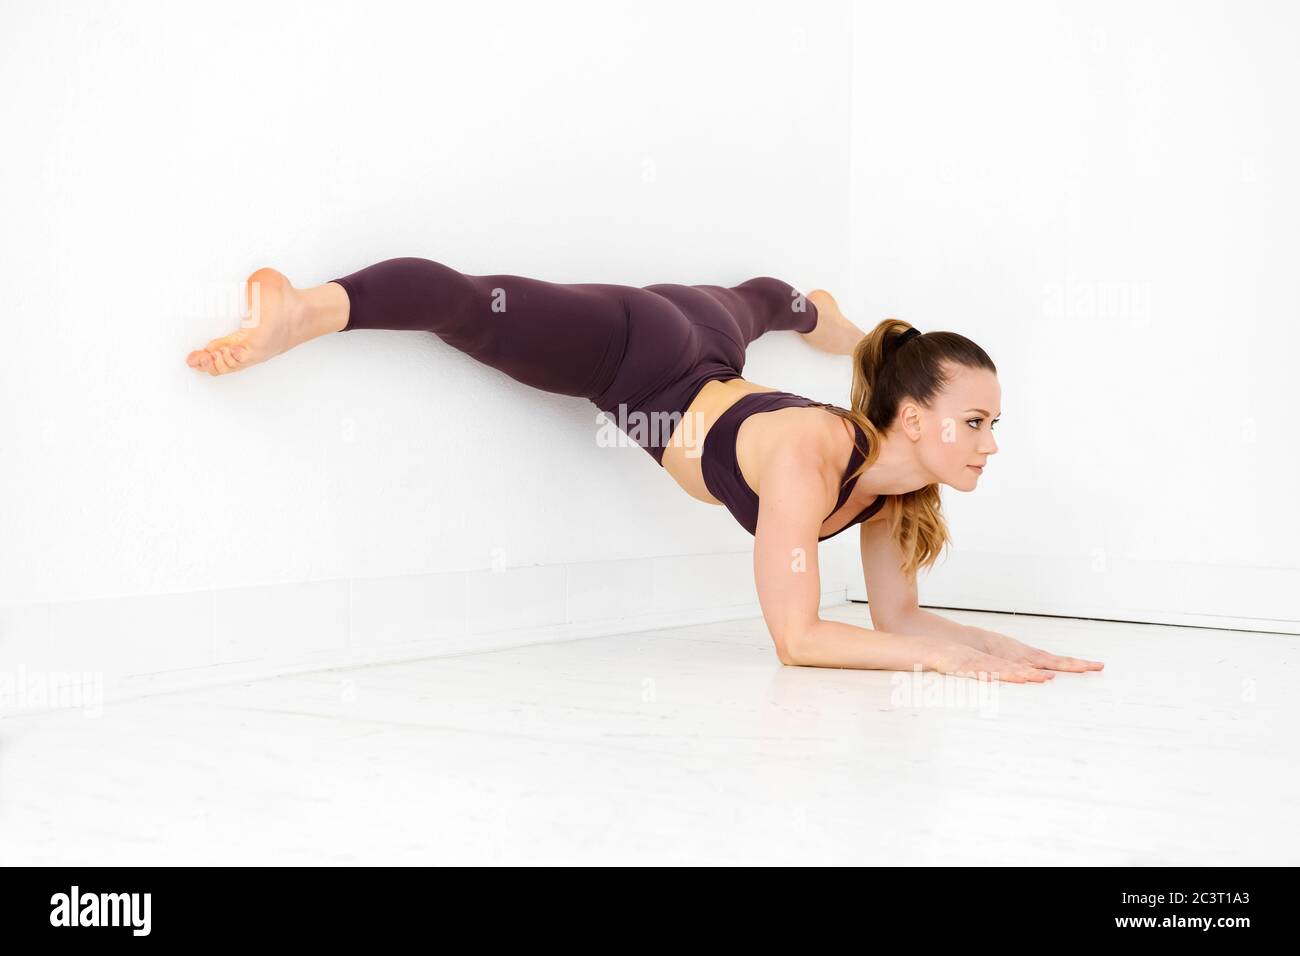 Frau Athlet tun eine Ellbogenwand Split Yoga Pose in der Ecke eines High-Key-weißen Turnhalle in einem aktiven Lebensstil oder Gesundheit und Fitness-Konzept Stockfoto